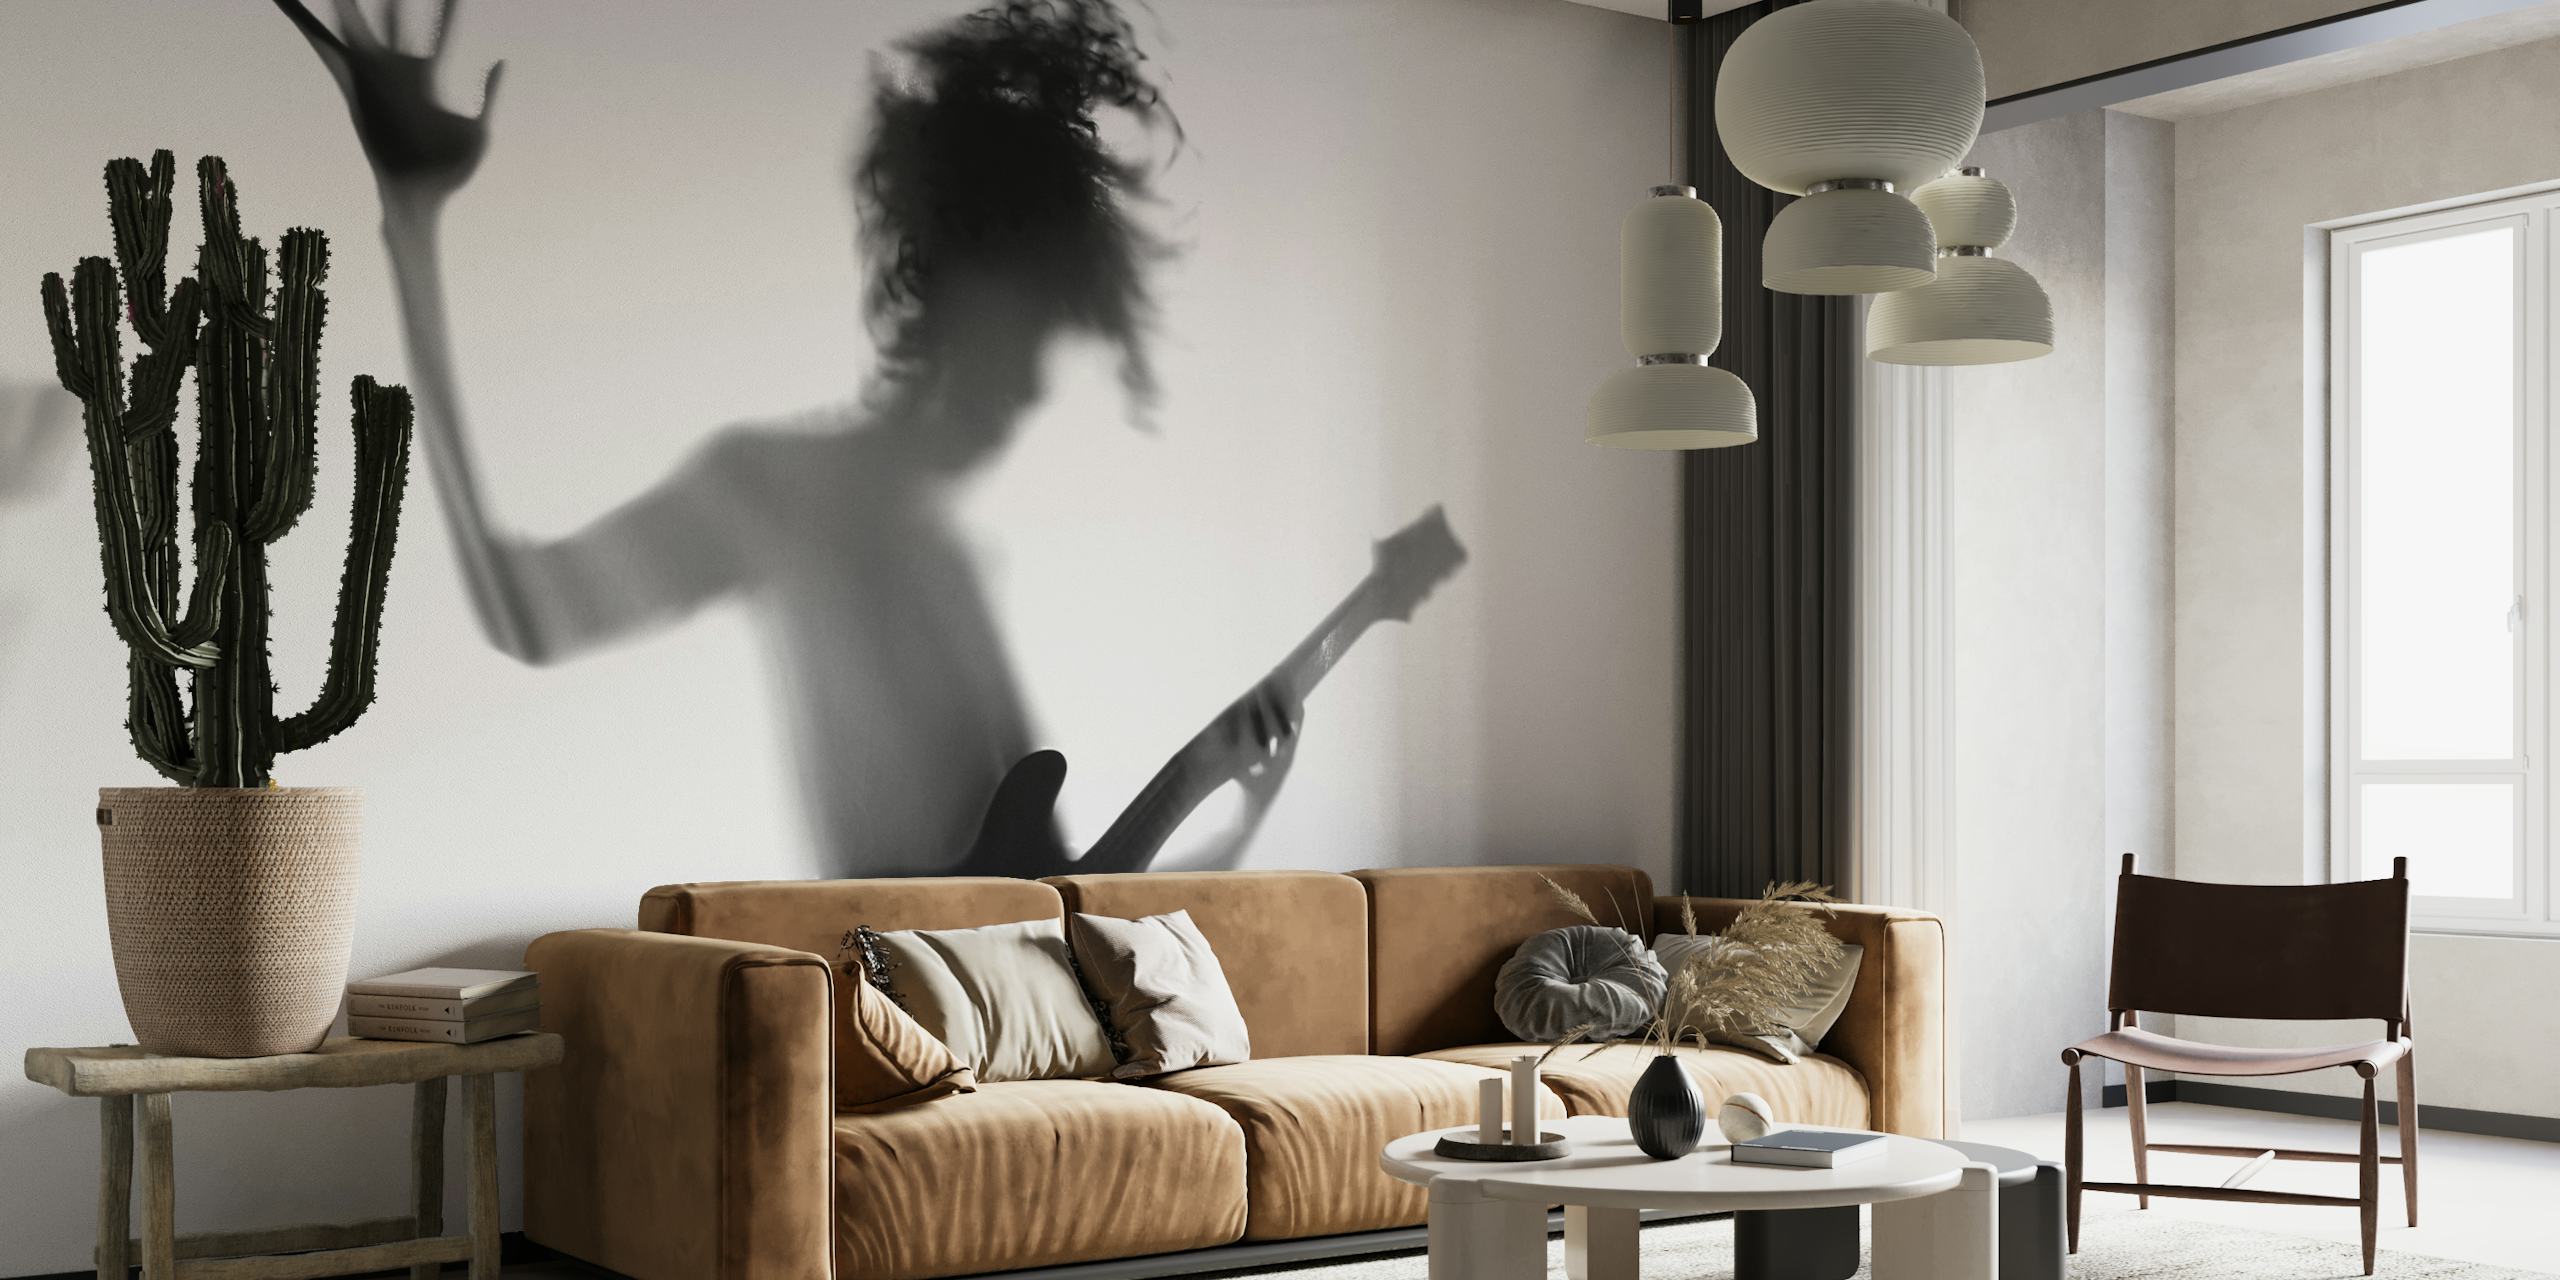 Silhueta de uma pessoa tocando violão em uma pose dinâmica em preto e branco.